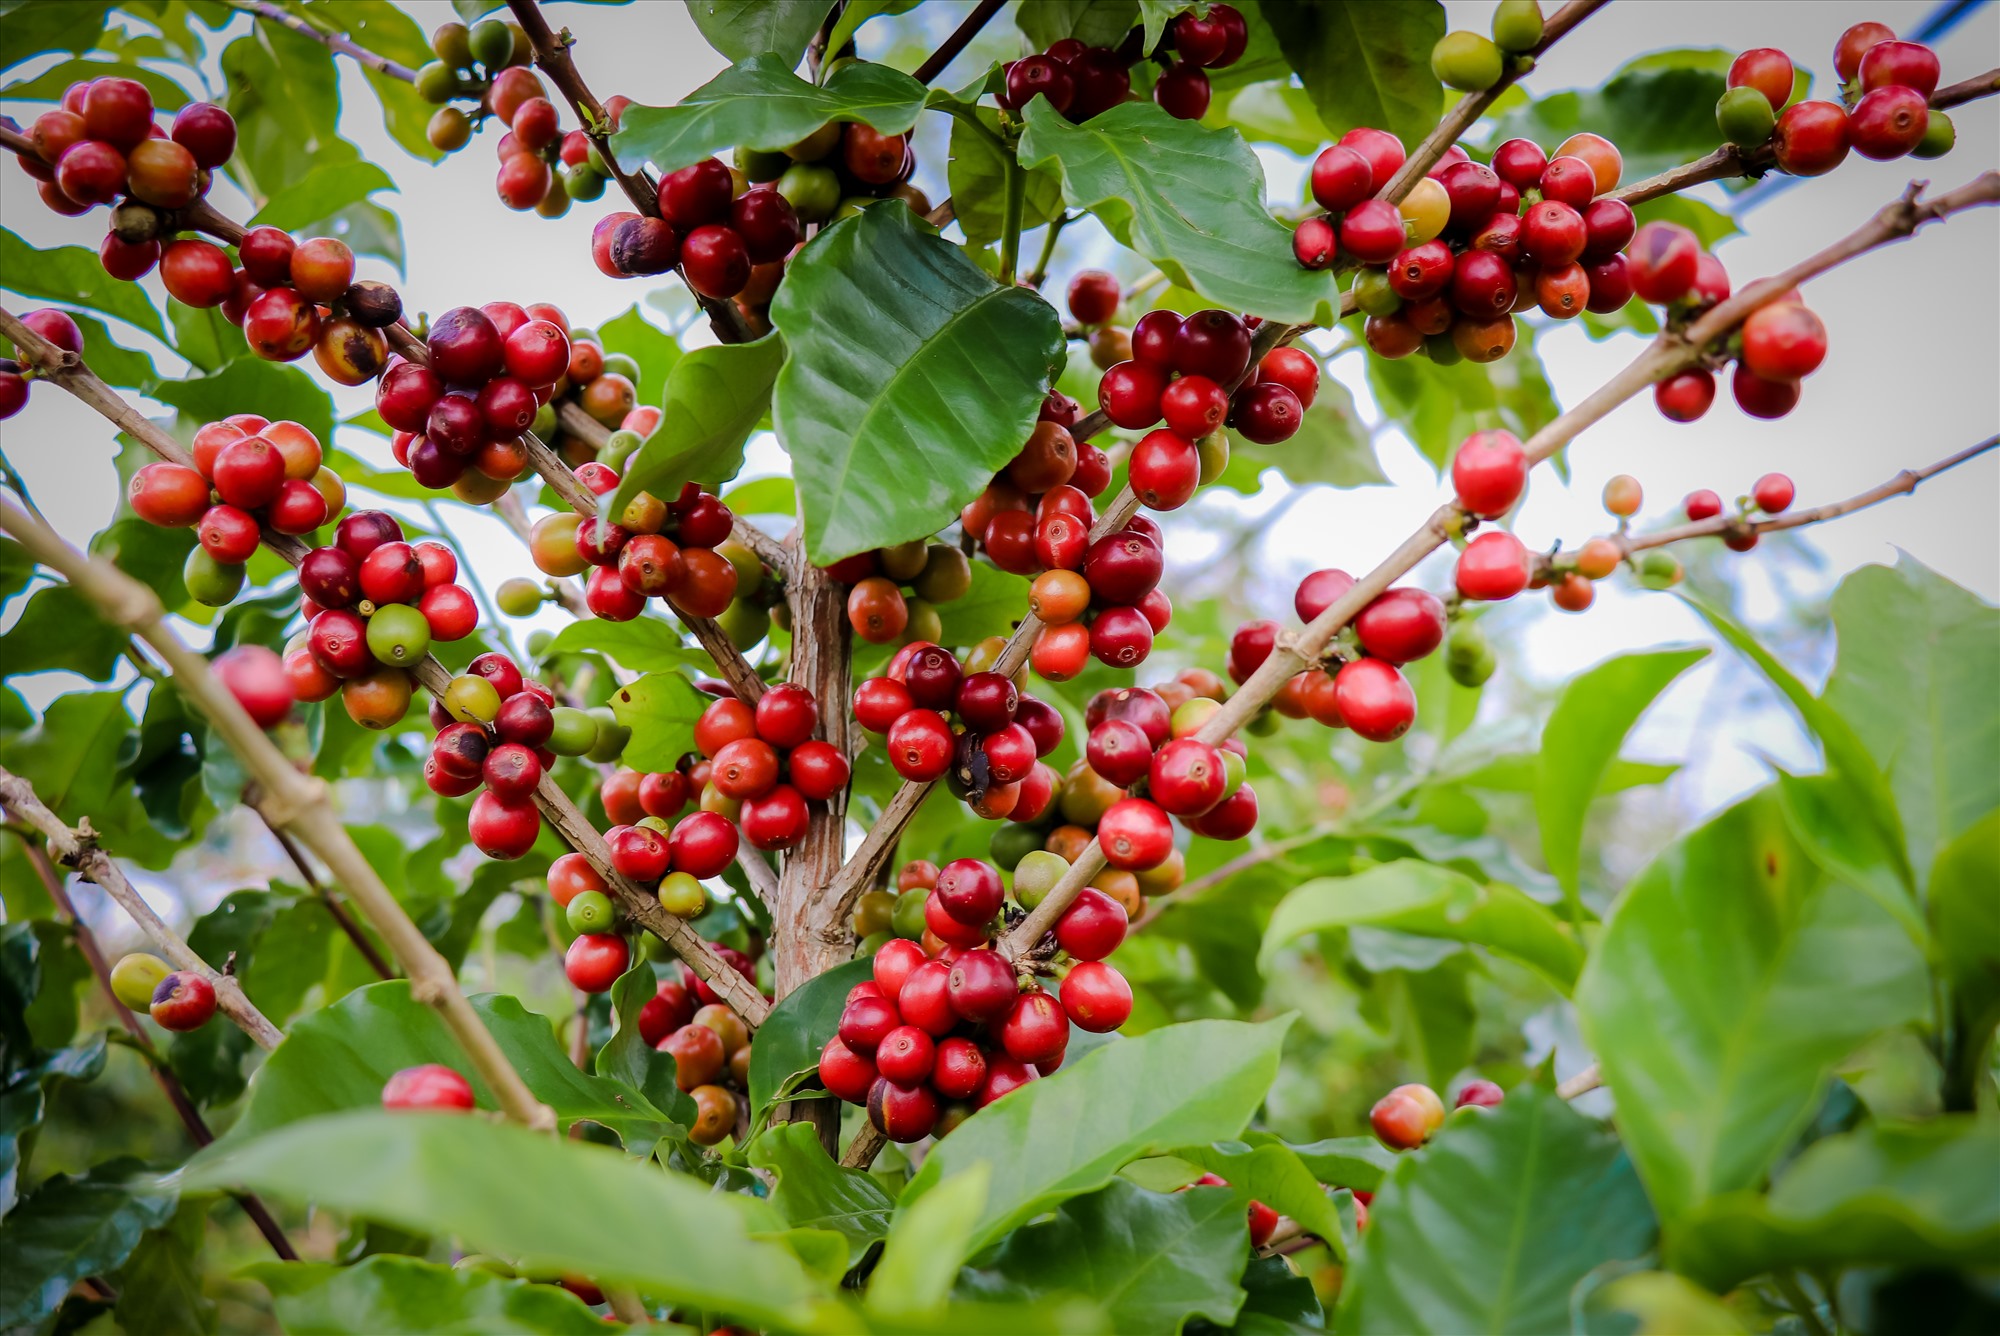 Trên toàn huyện Hướng hóa, hiện có khoảng 5.000 ha trồng cây cà phê (chủ yếu là cà phê Arabica).